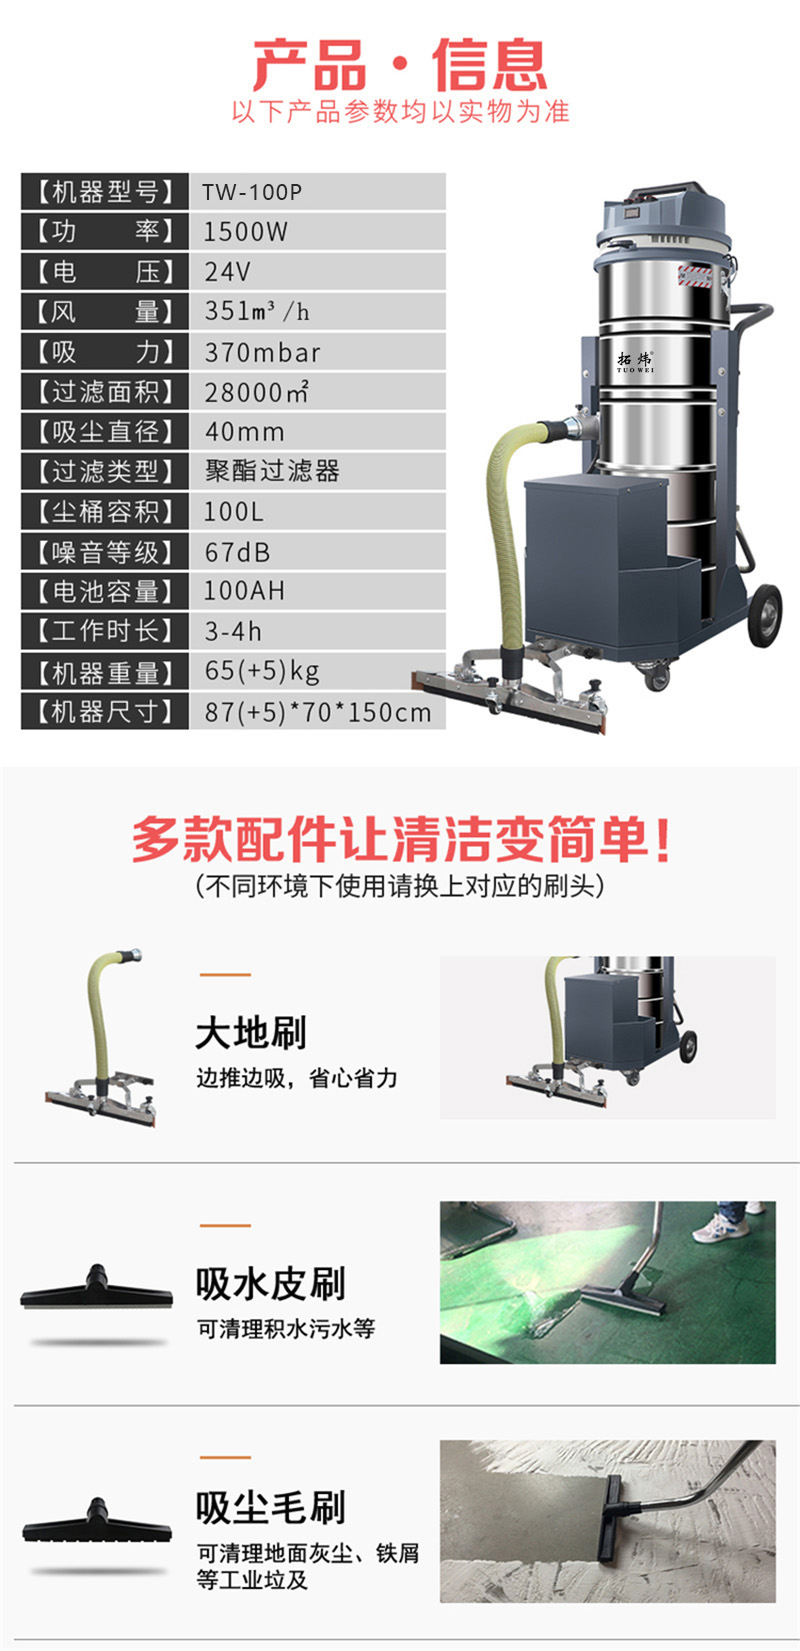 拓煒電瓶式工業吸塵器TW-100P(圖6)